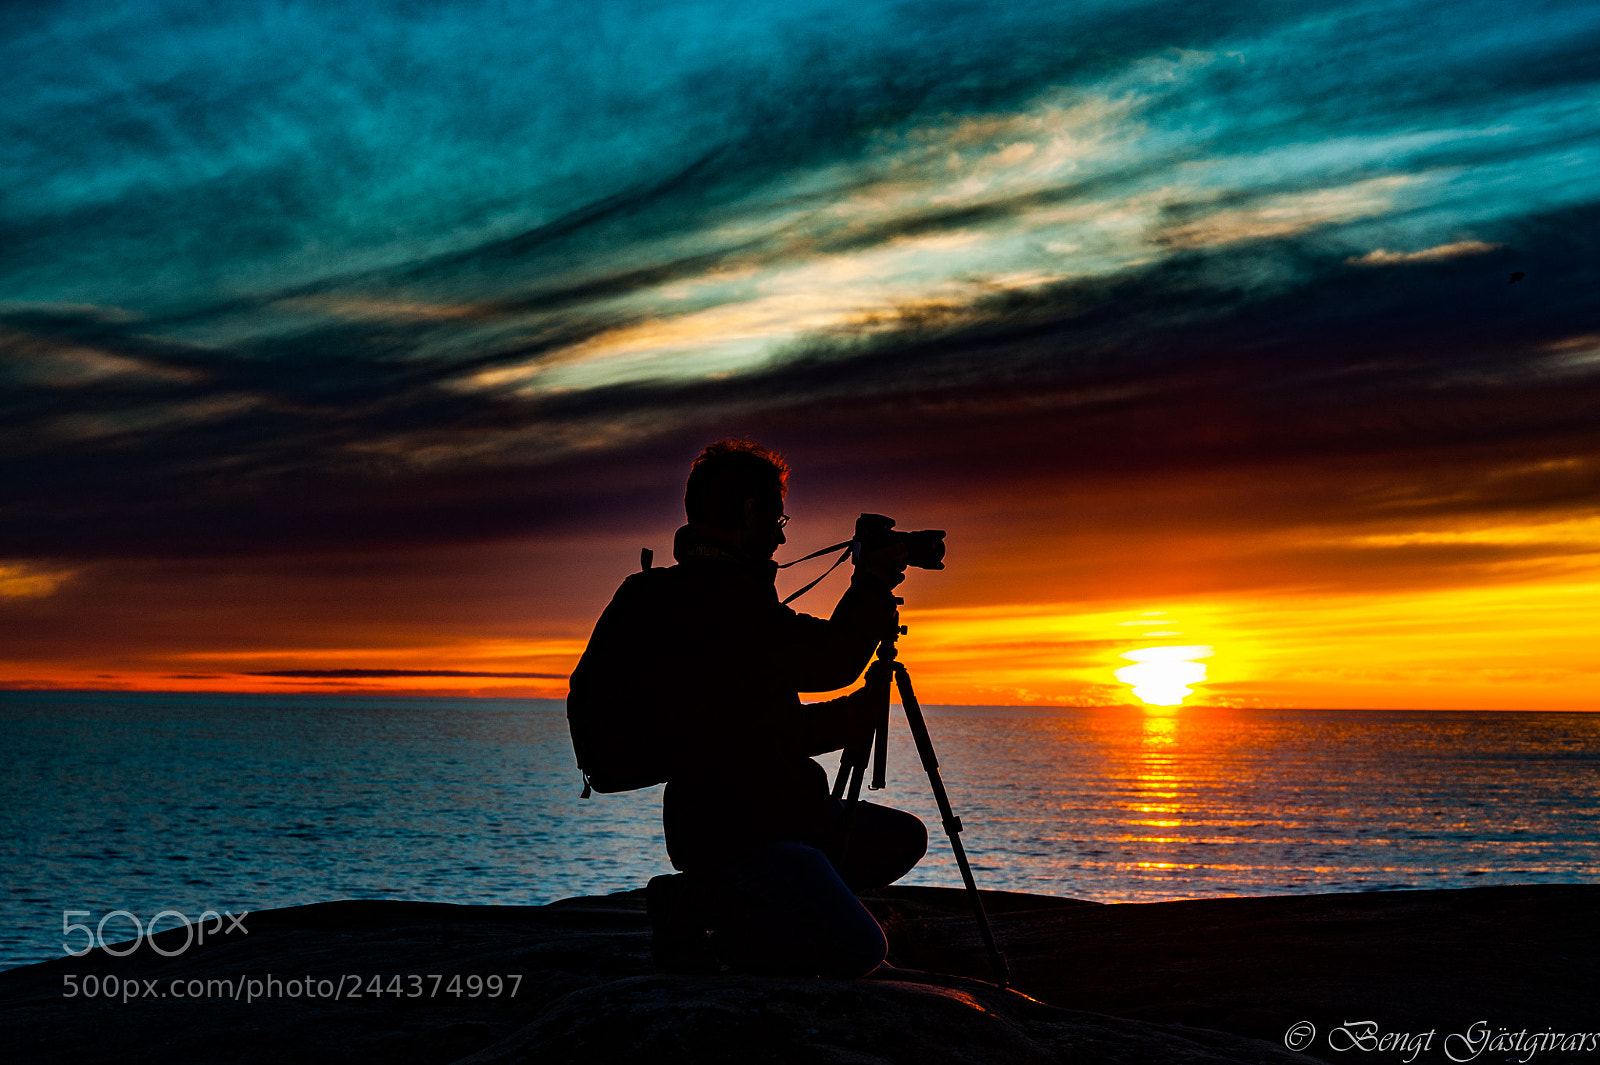 Nikon D700 sample photo. Sunset photography